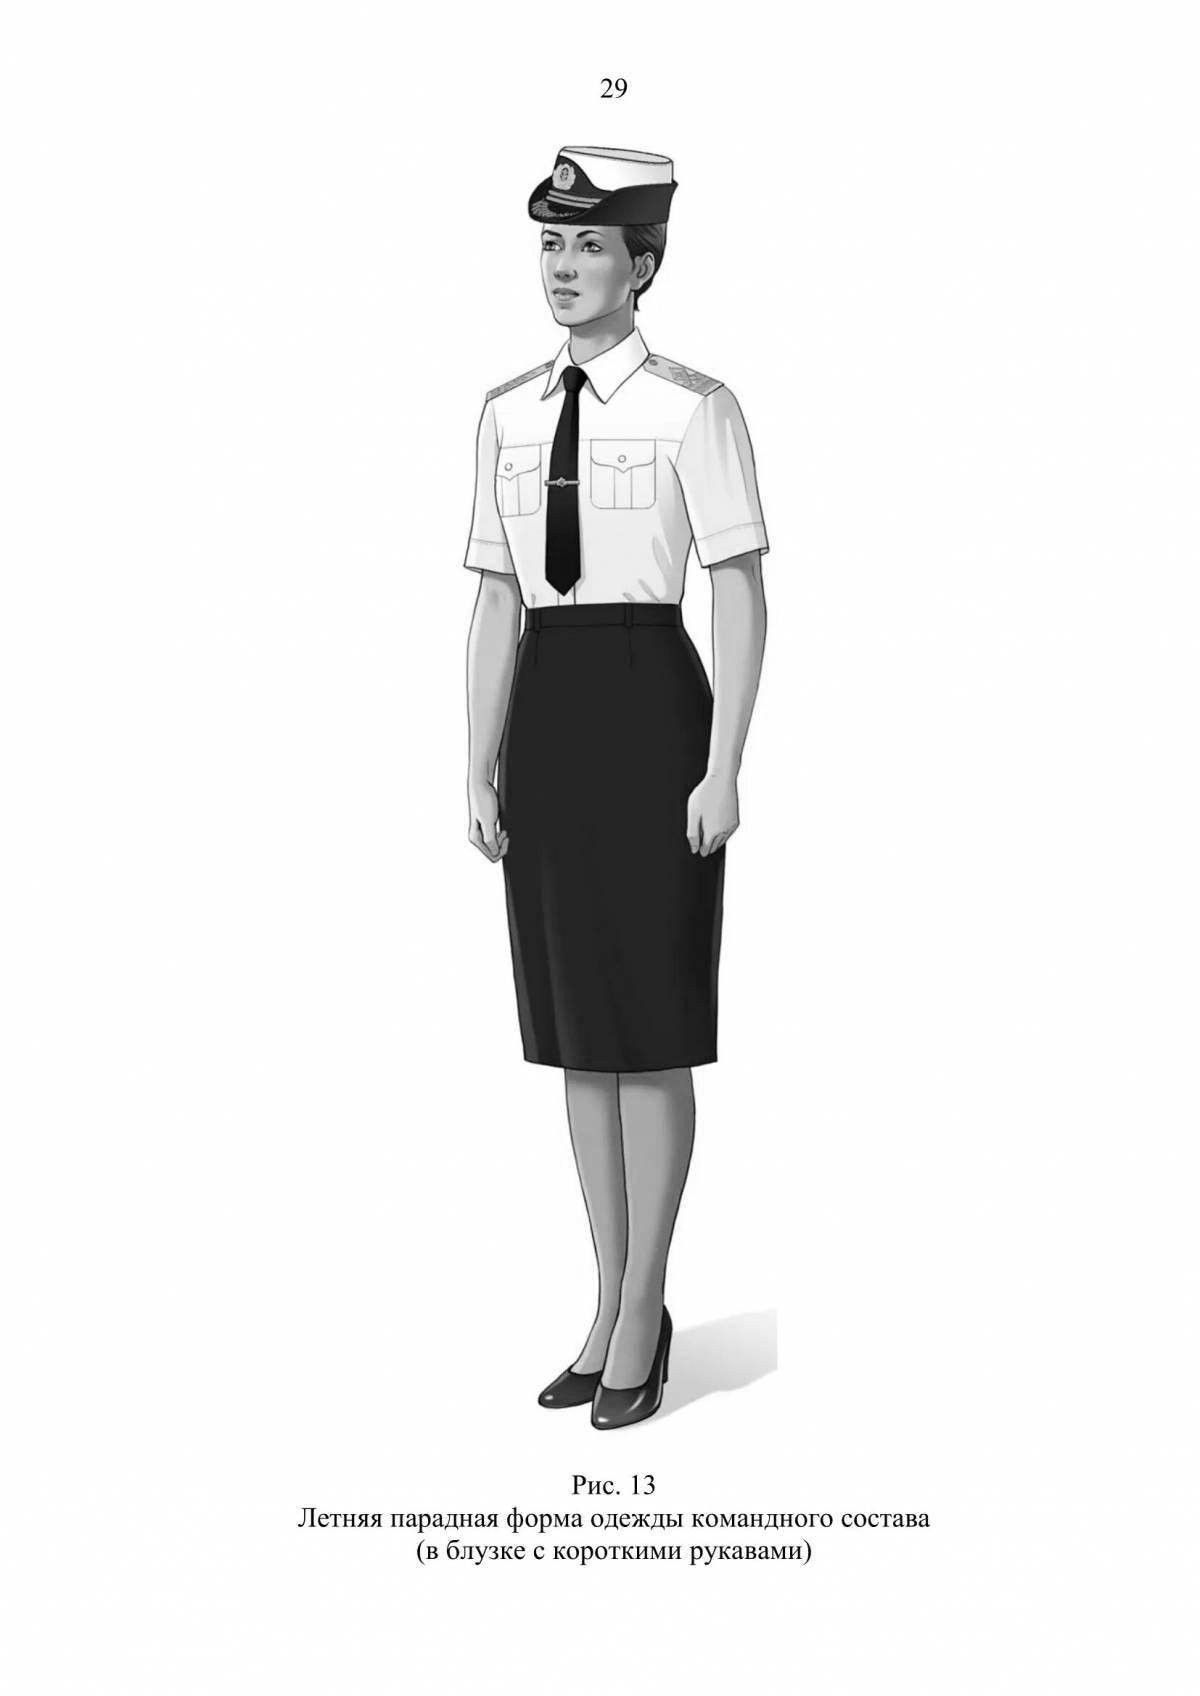 Airplane maid uniform charm